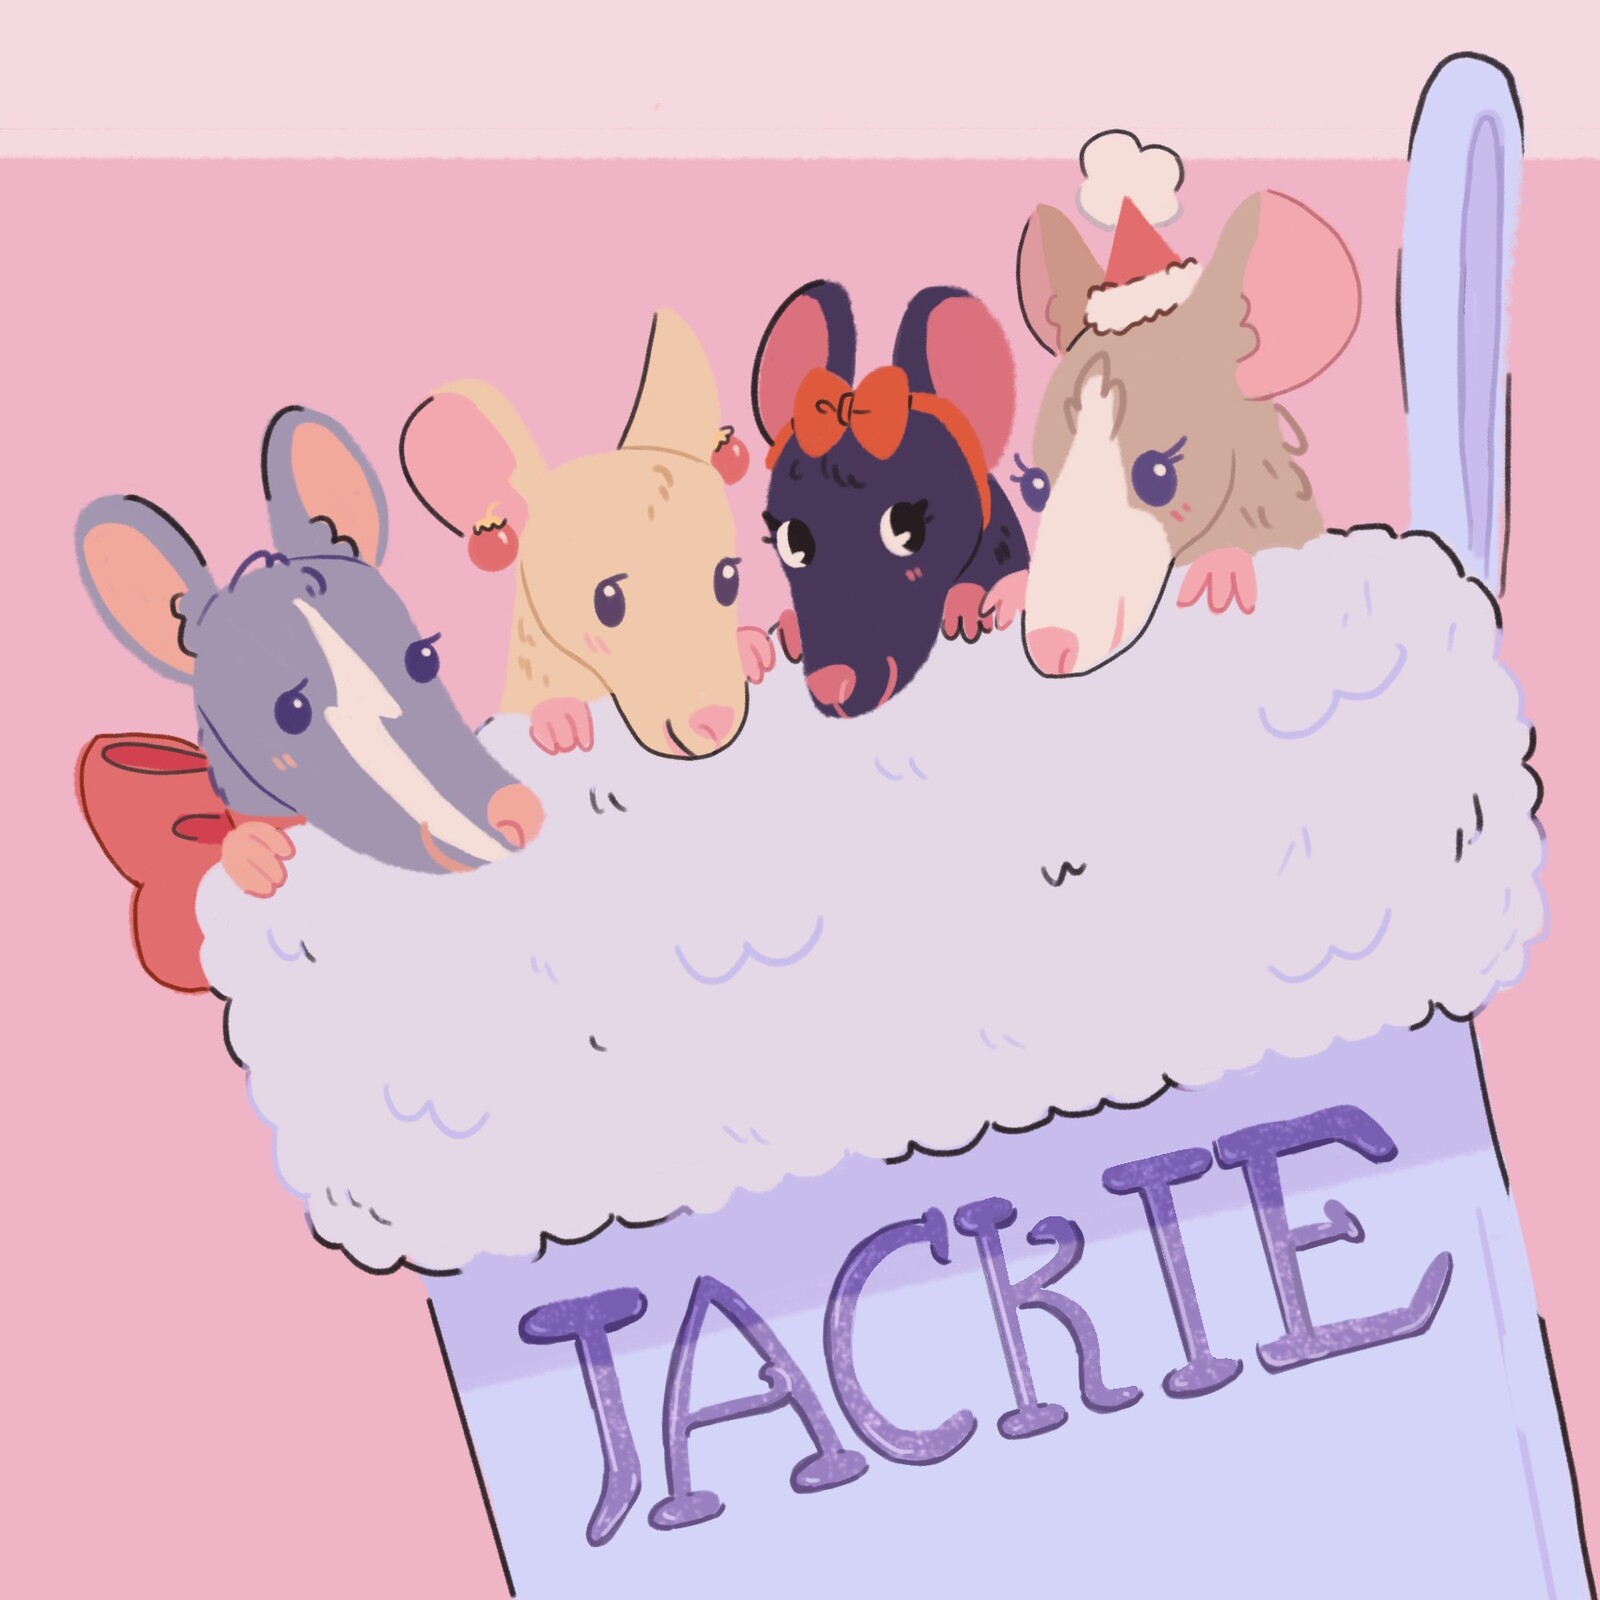 Jackie's Ratties